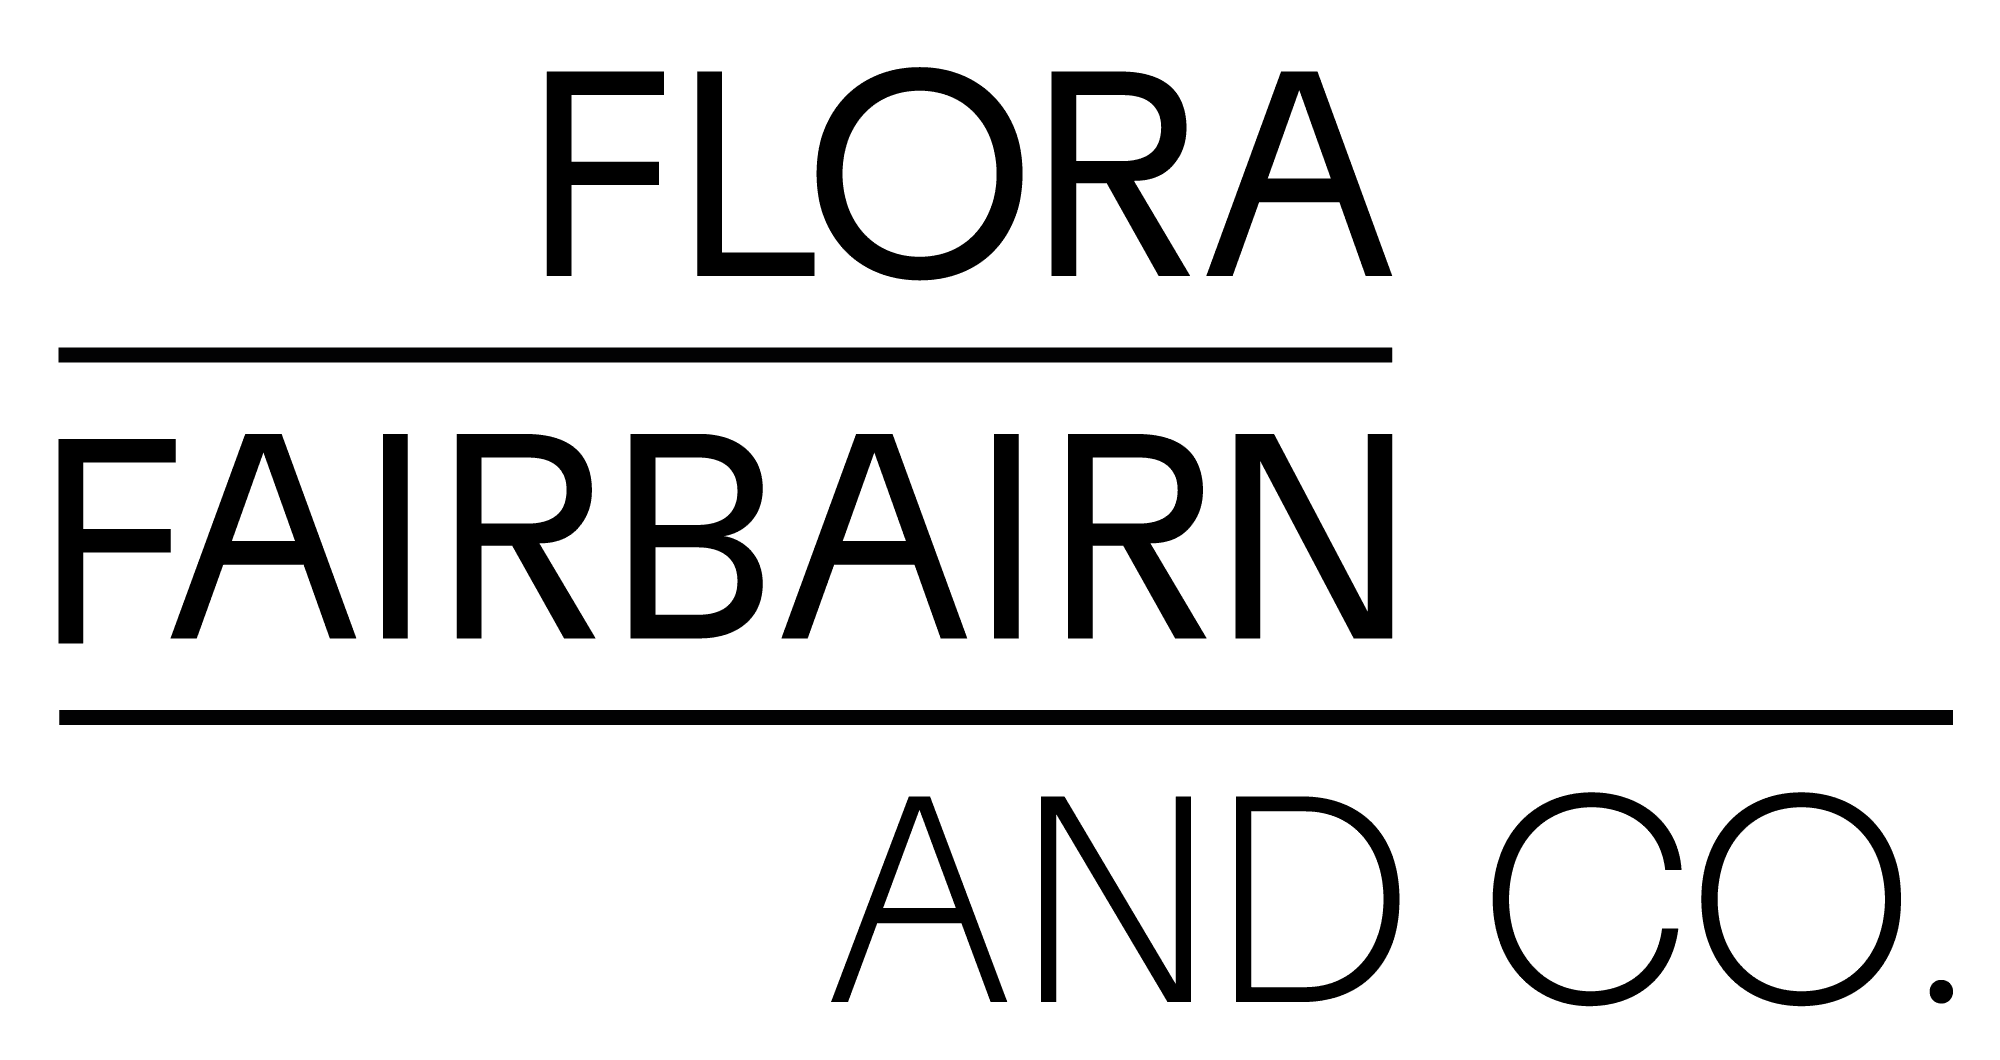 Flora Fairbairn & Co. company logo